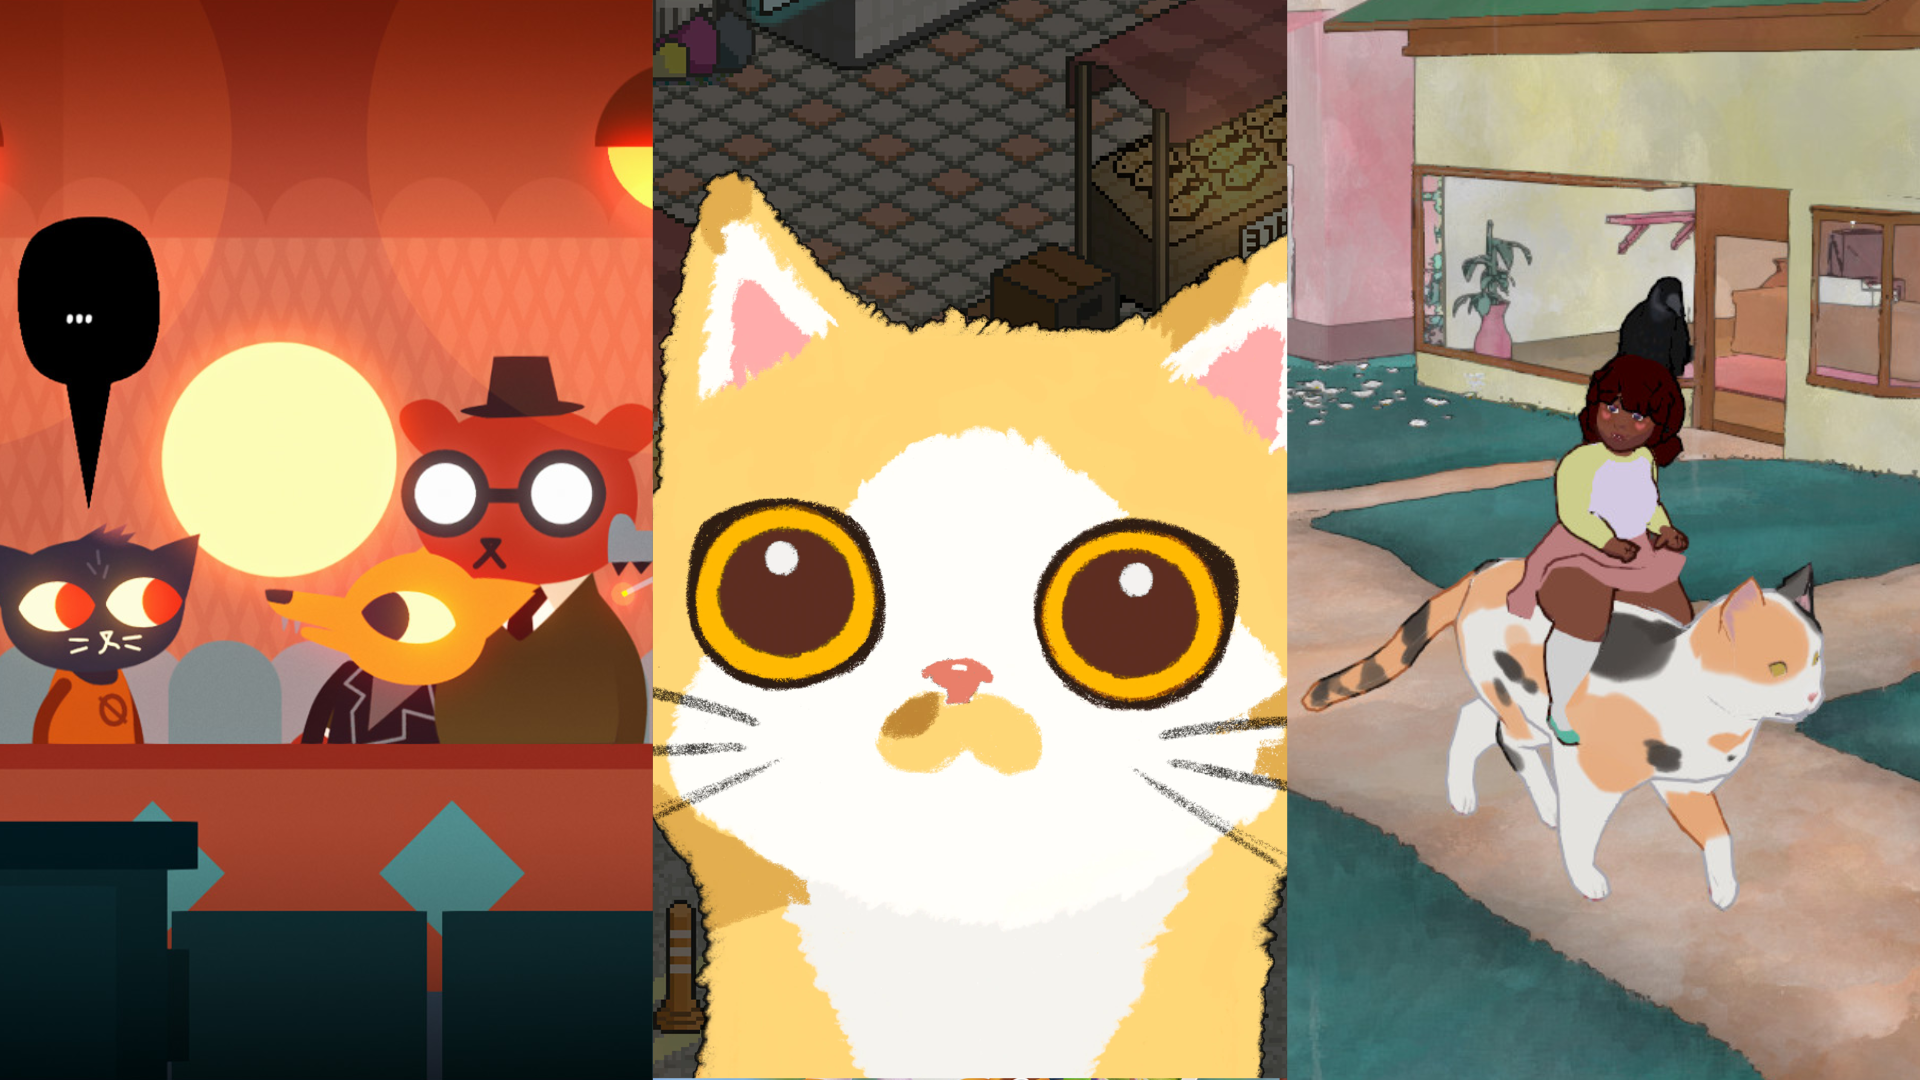 Os 10 melhores jogos de gato para PC, Isso permite que você jogue como um  gato